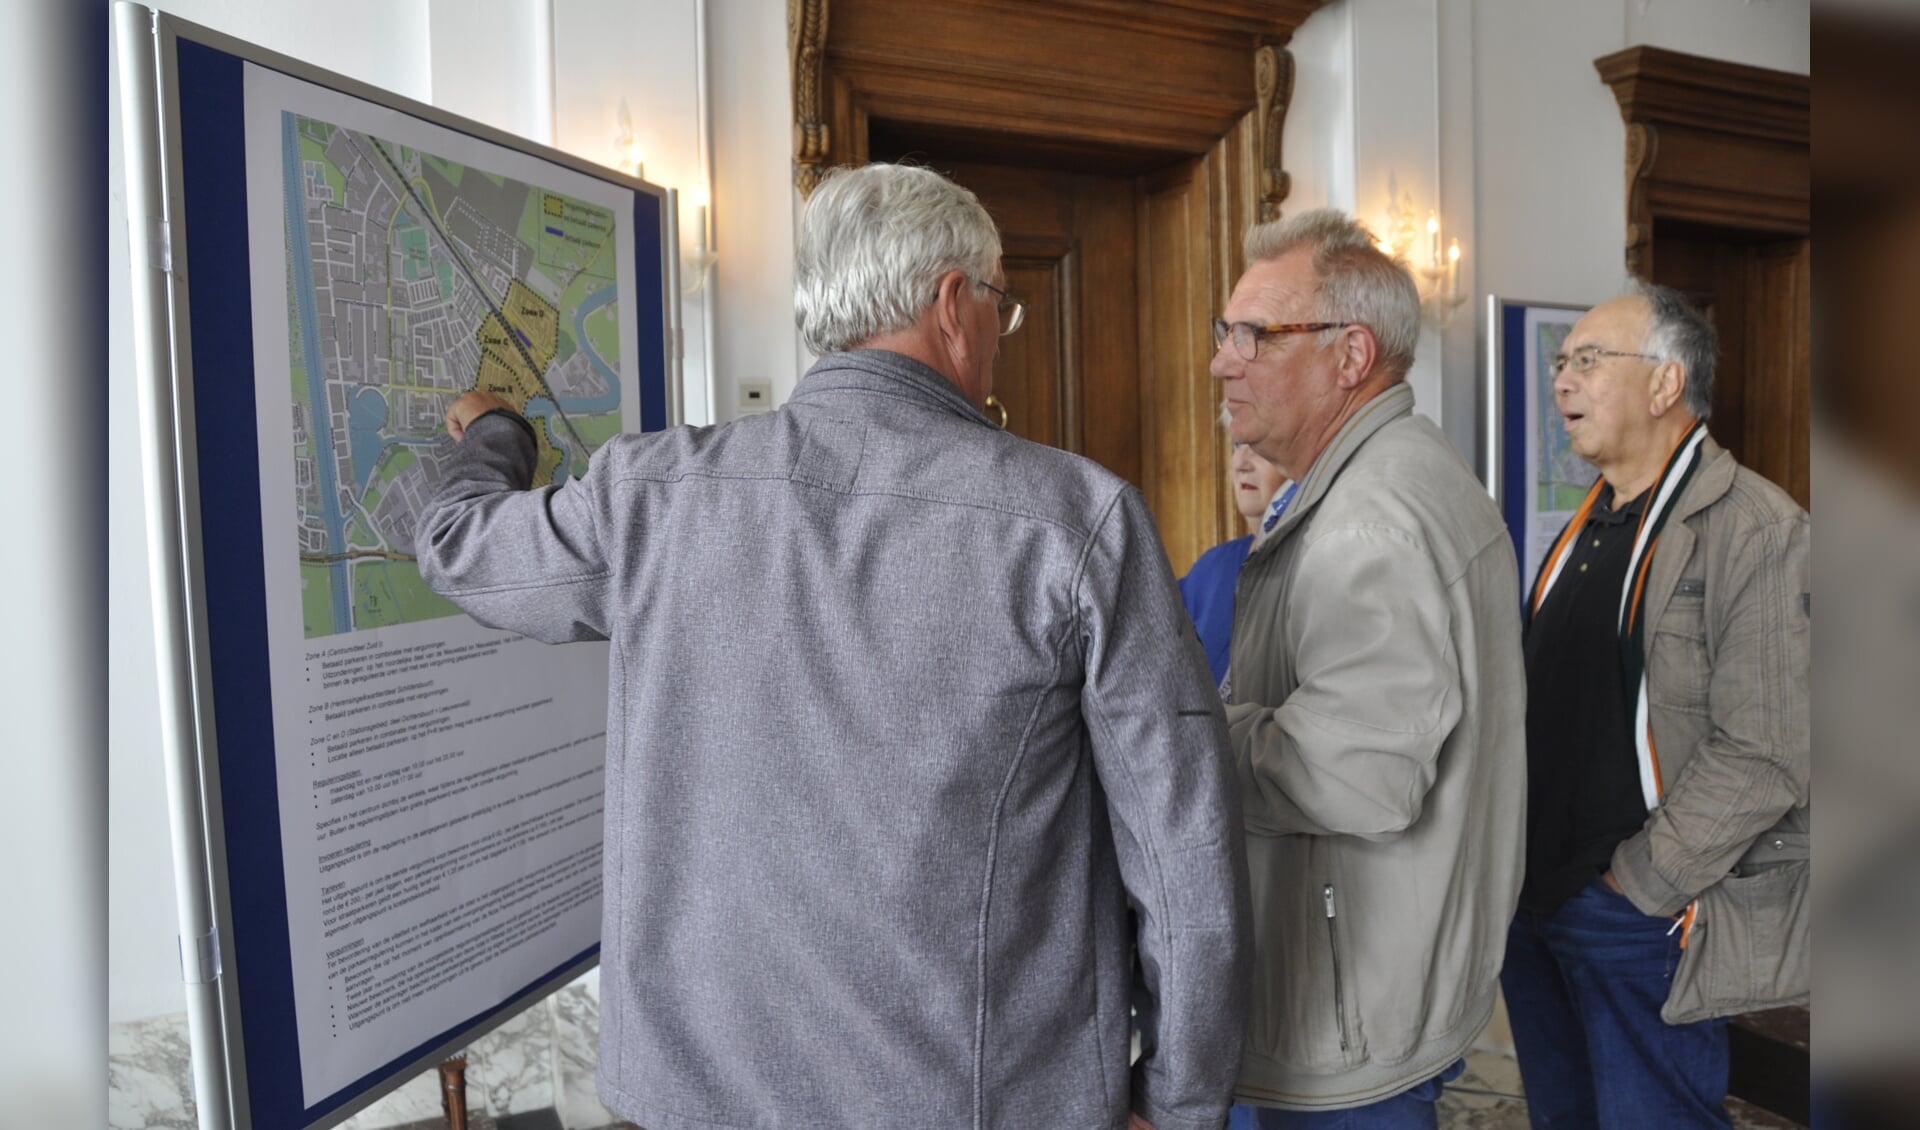 Inwoners bekijken de kaart waarop de gebieden van betaald parkeren staan aangegeven.